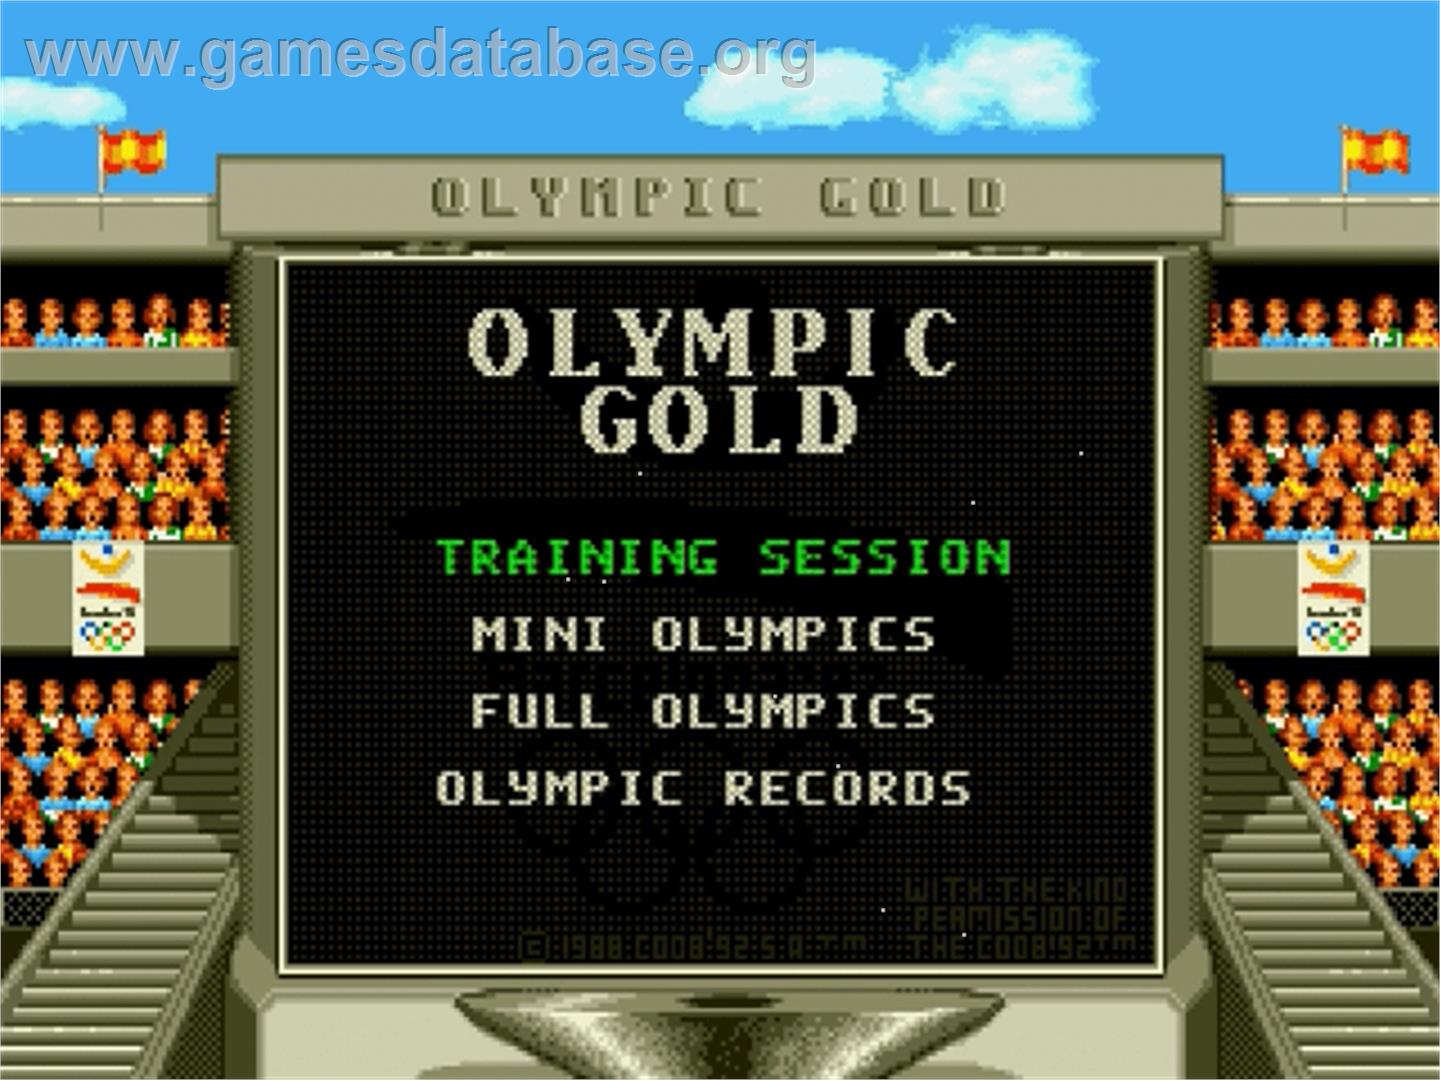 Olympic Gold: Barcelona '92 - Sega Genesis - Artwork - Title Screen